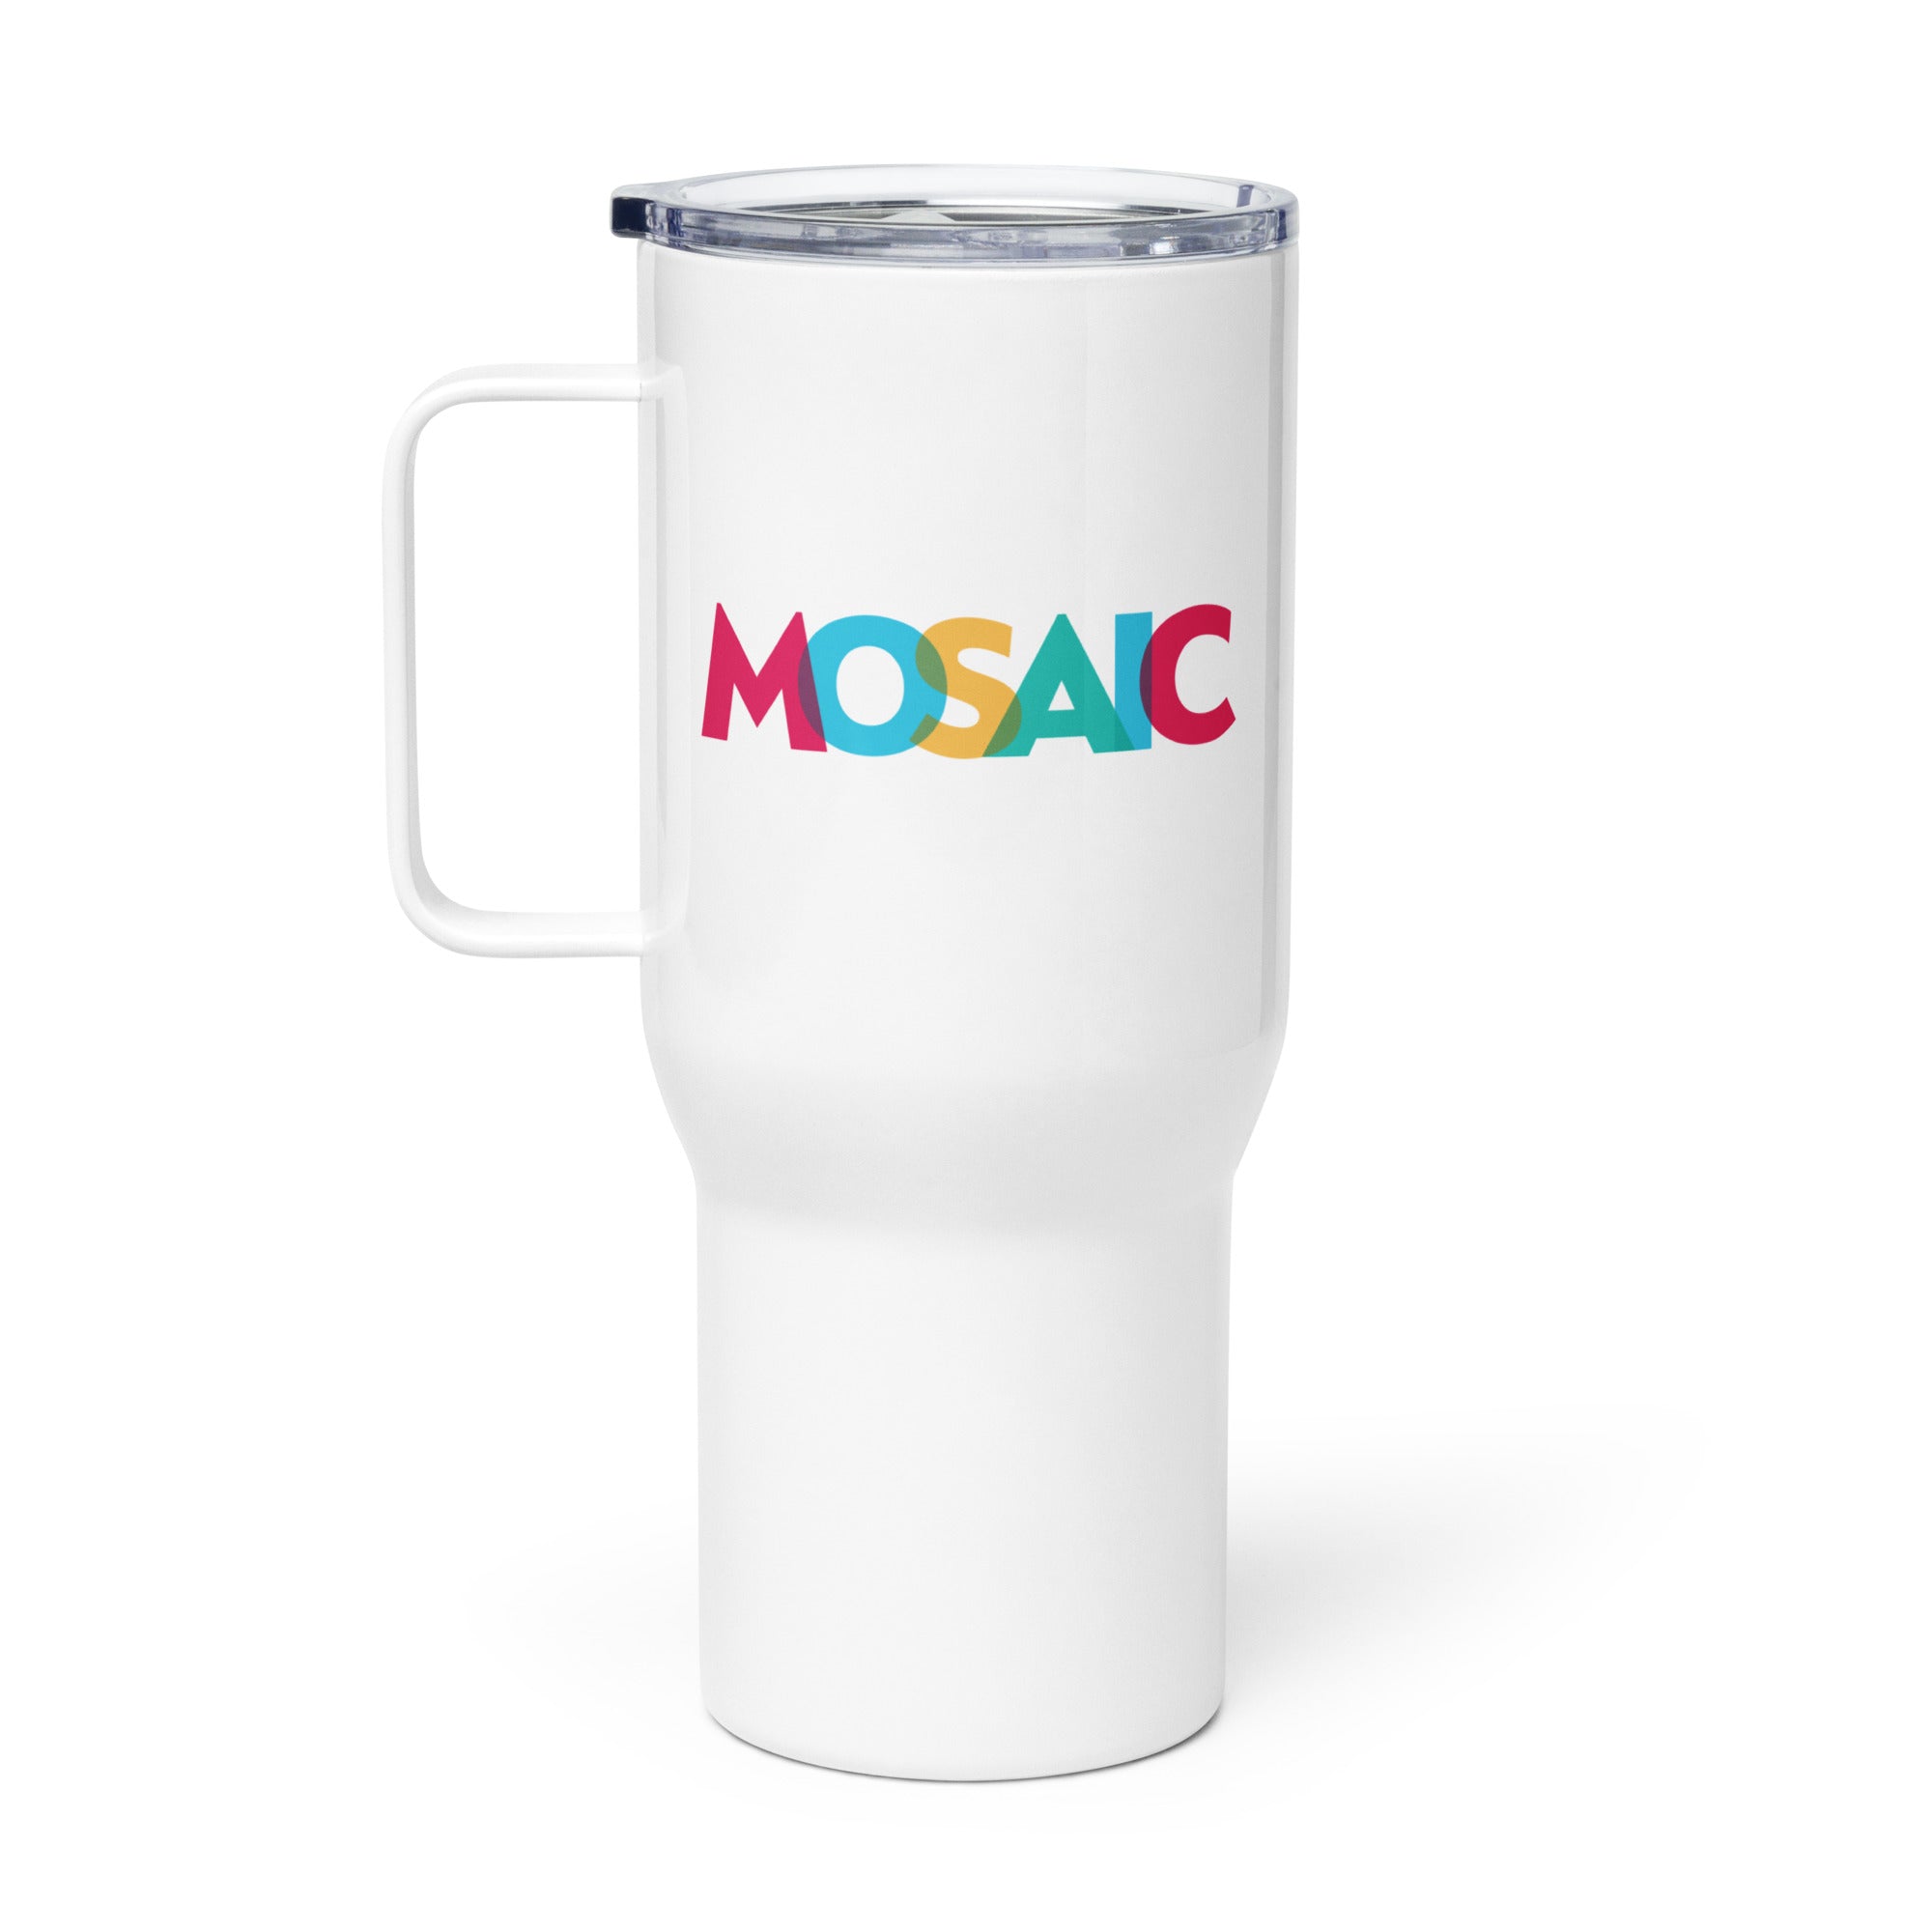 Mosaic: Travel Mug